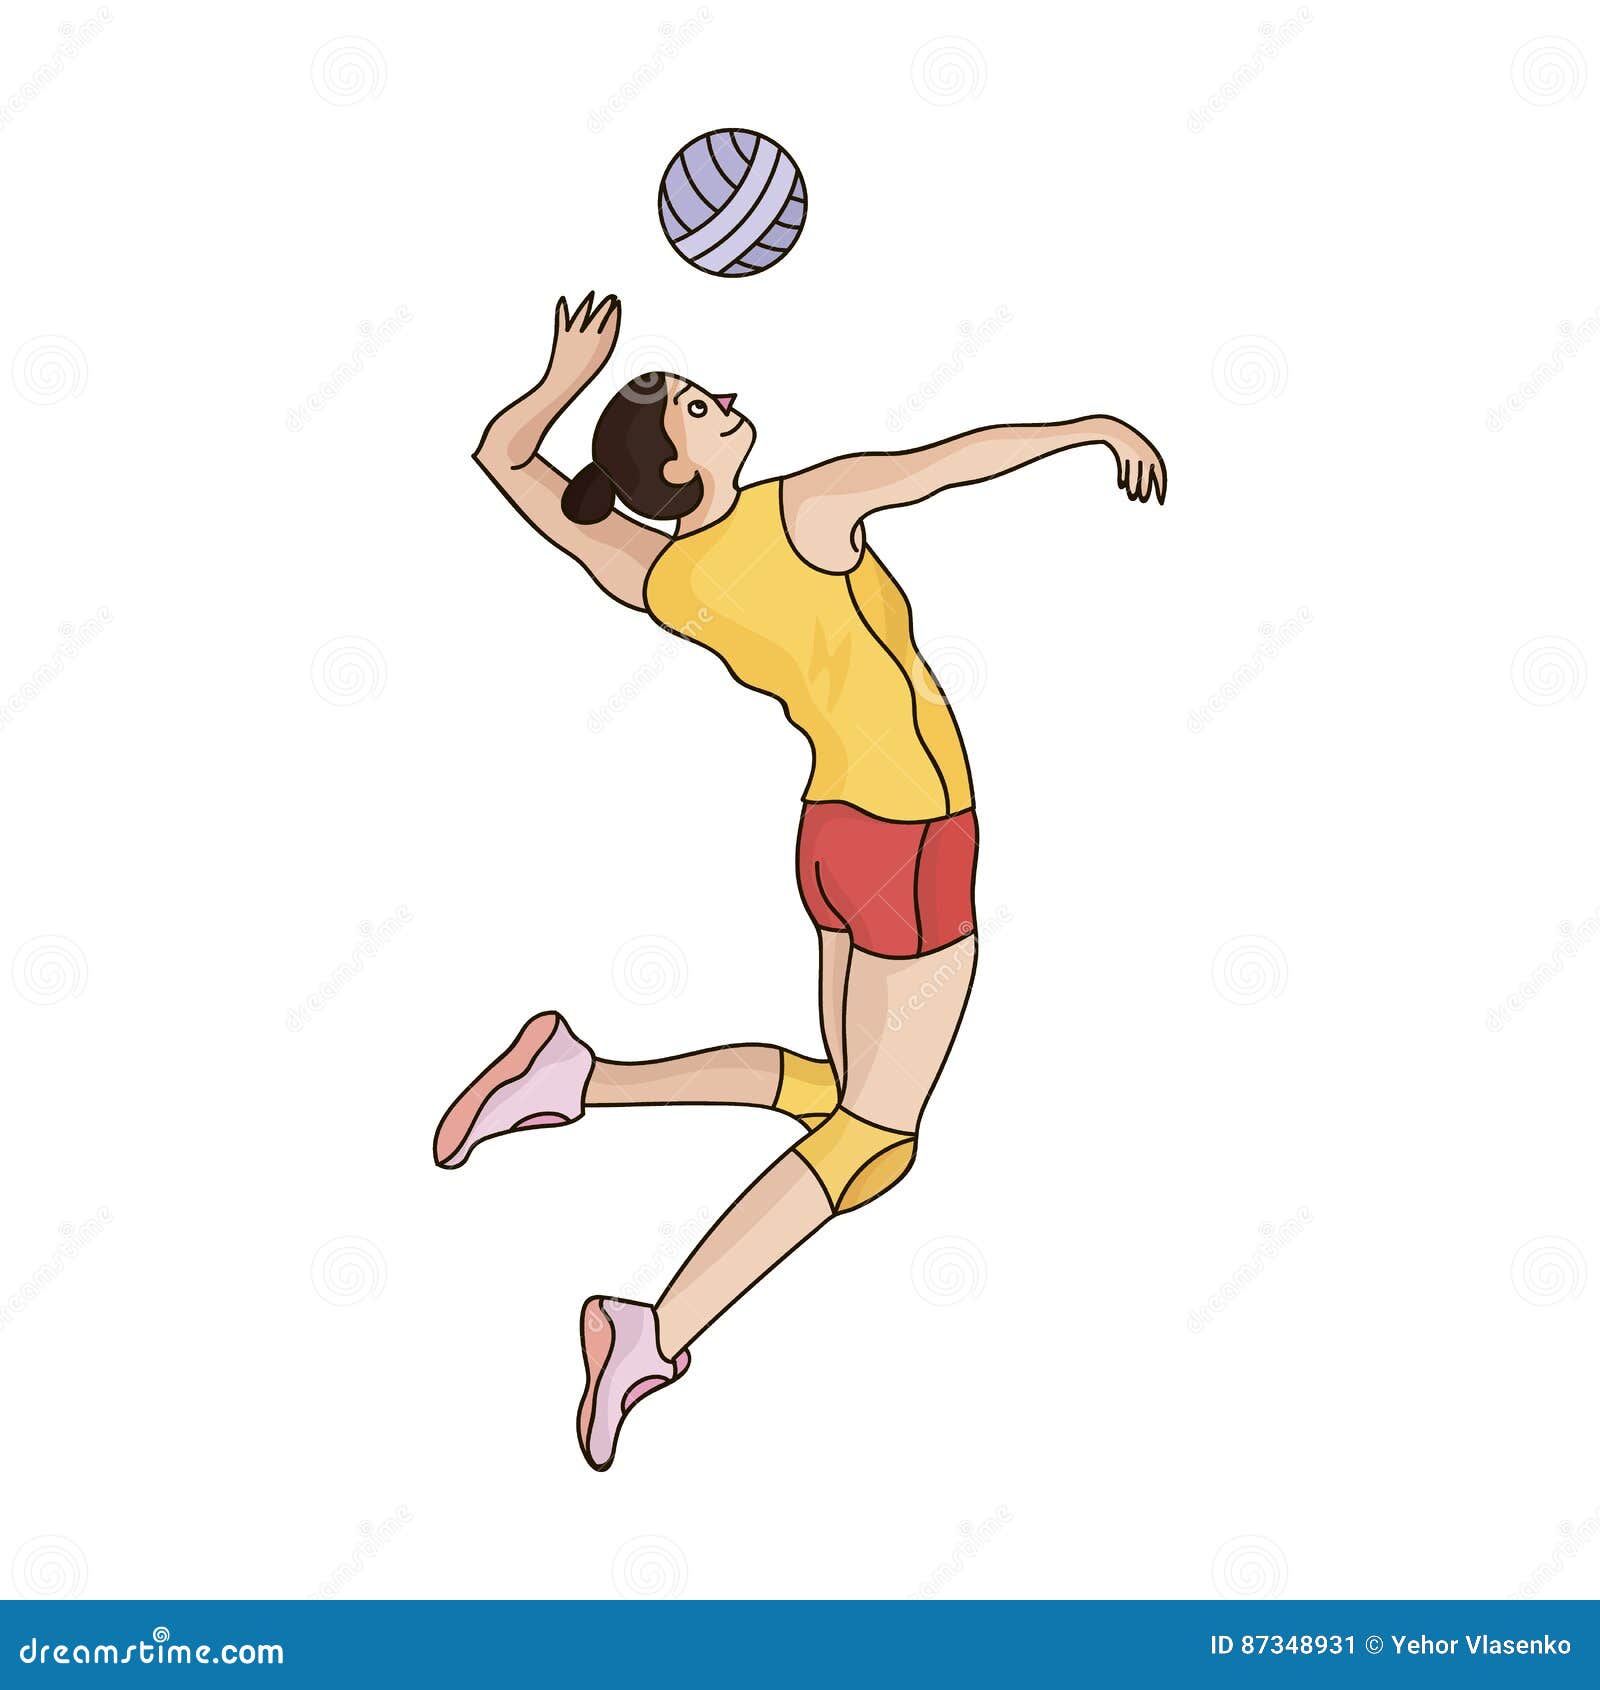 Esporte Volei Jogos Olímpicos, Download Grátis, Desenho